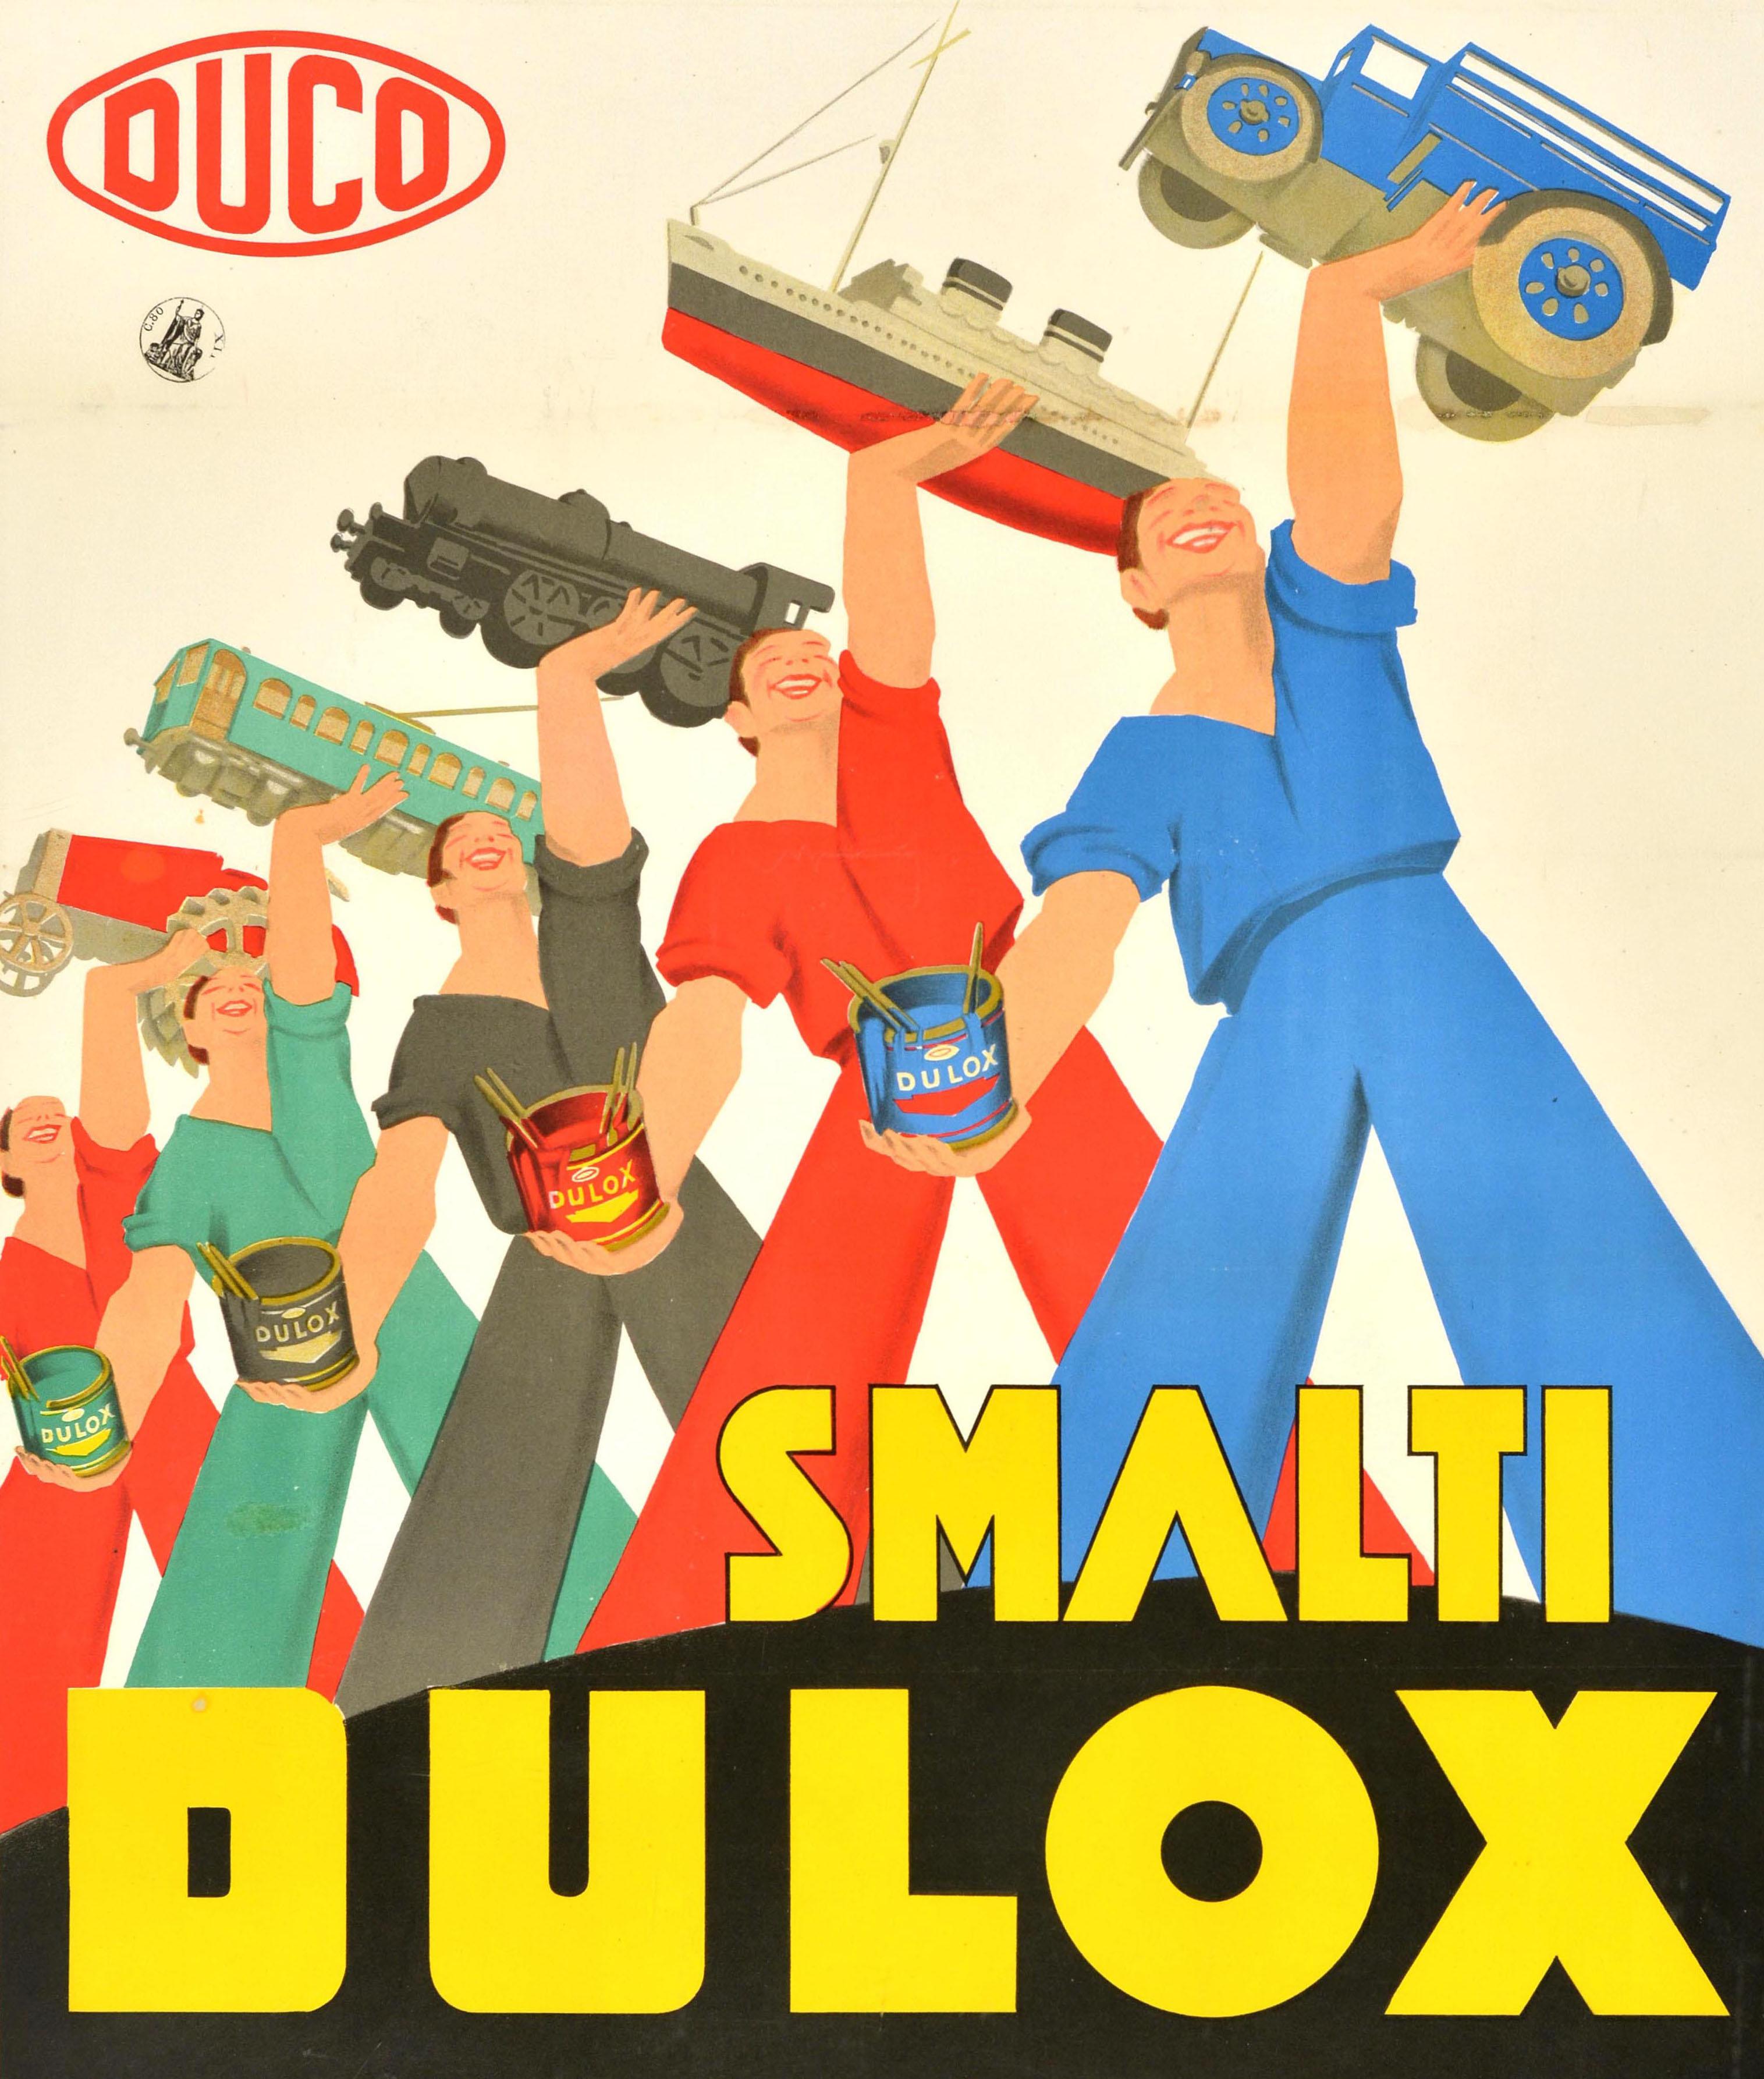 Original Vintage-Werbeplakat für Duco Dulox-Emailfarben - Prodotti insuperabili totalmente Italiani / Unübertroffene, total italienische Produkte - mit einer großartigen Illustration von lächelnden Arbeitern in blauen, roten, grauen und grünen